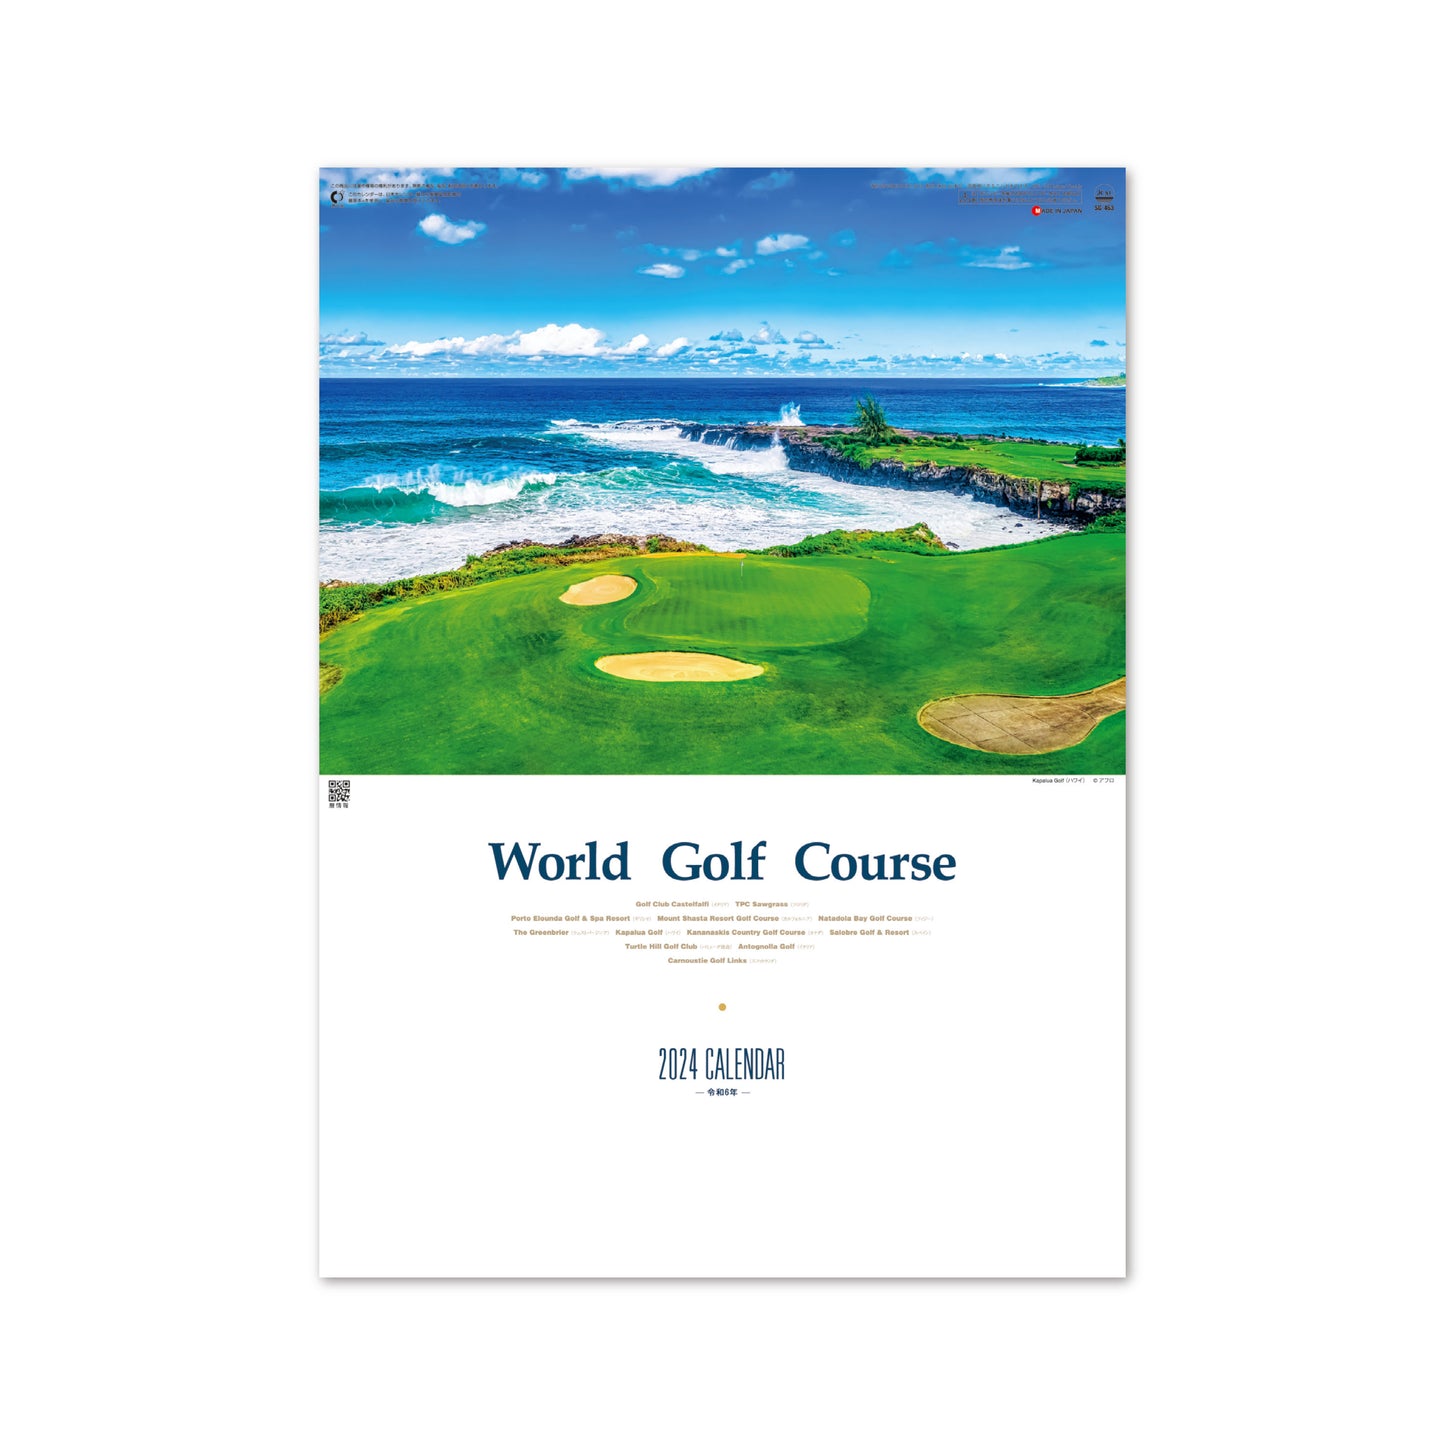 SG-463 世界のゴルフコース